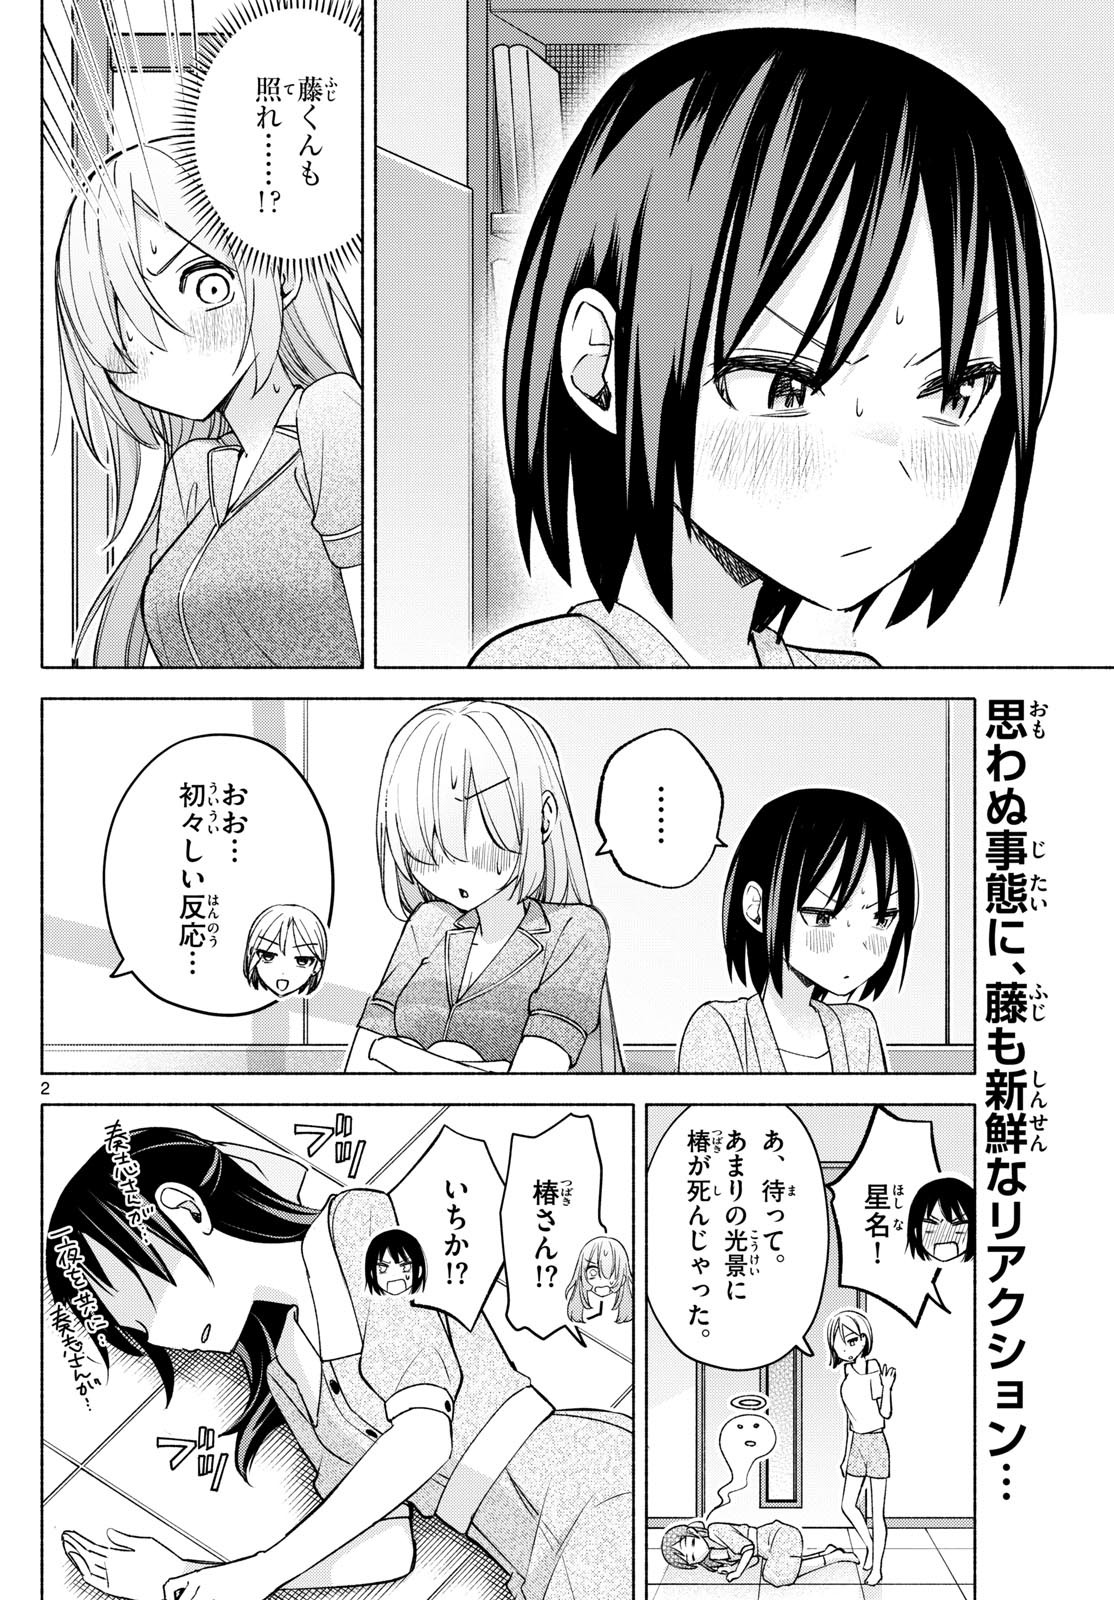 Kimi to Warui Koto ga Shitai - Chapter 035 - Page 2